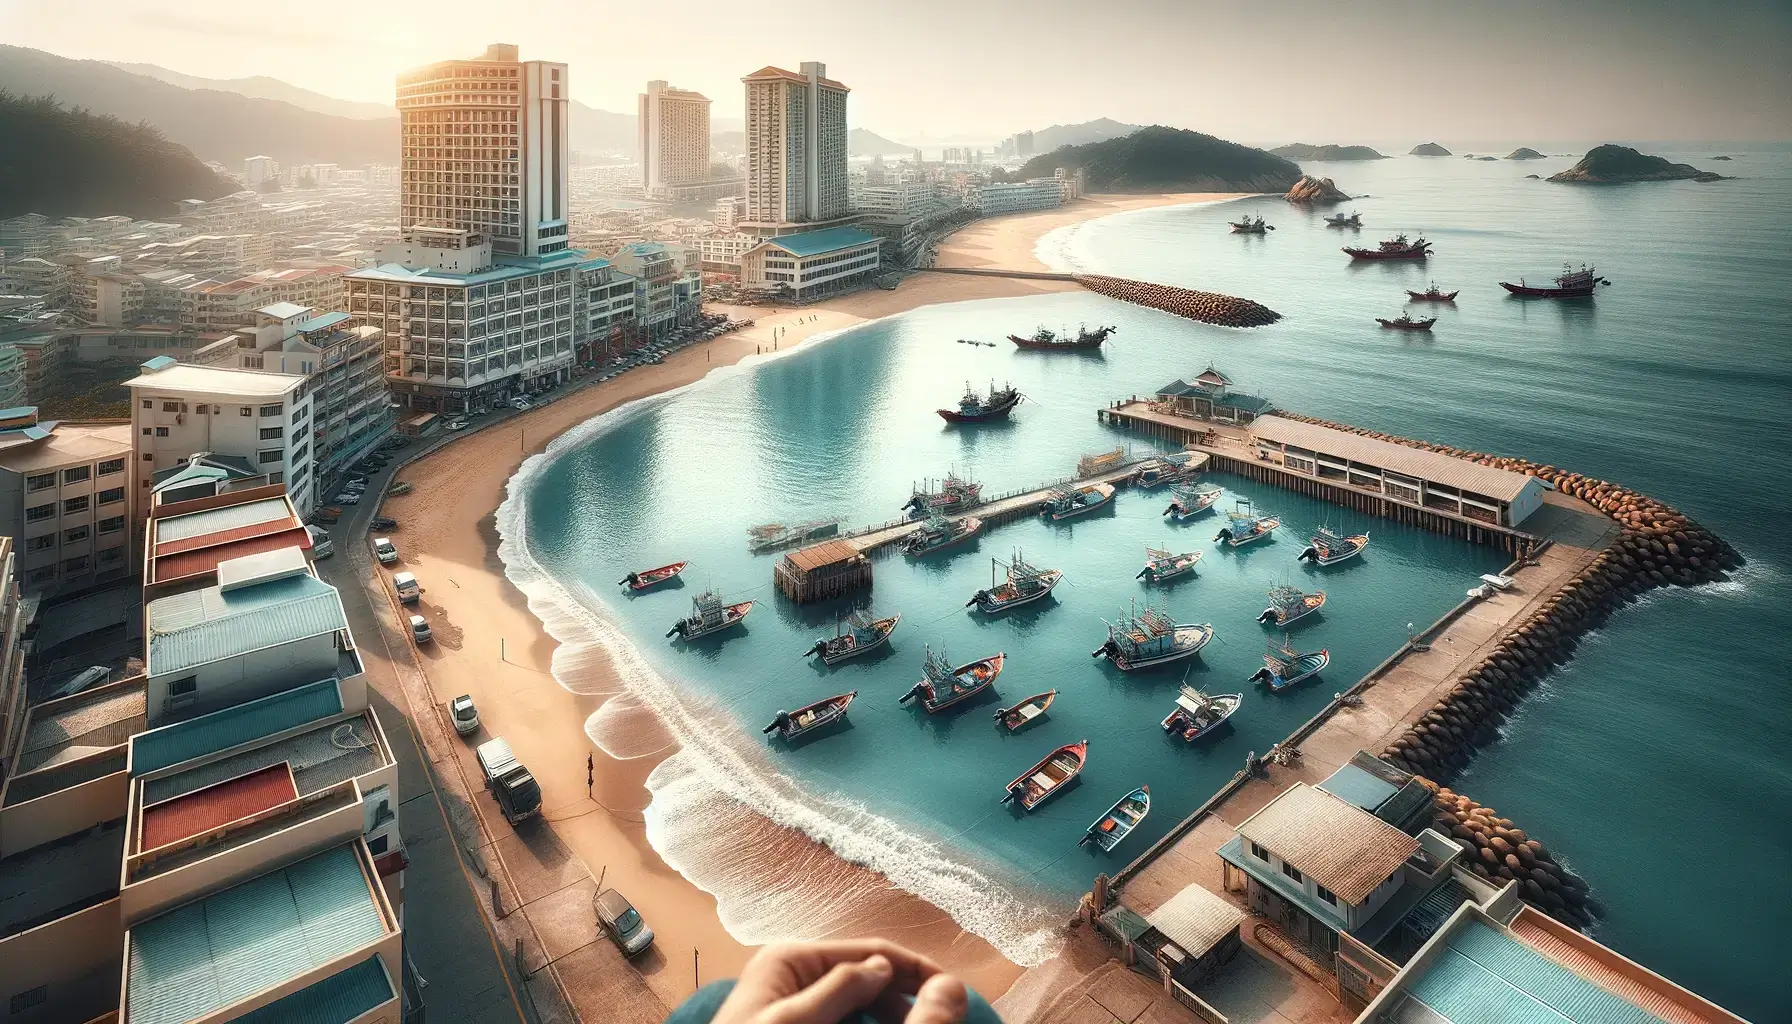 這是從站在海灘上的人的角度描繪風景的圖像，其中包括一個有小船的漁港和沿著海濱的附近酒店。 該場景捕捉到了寧靜而誘人的沿海氛圍。